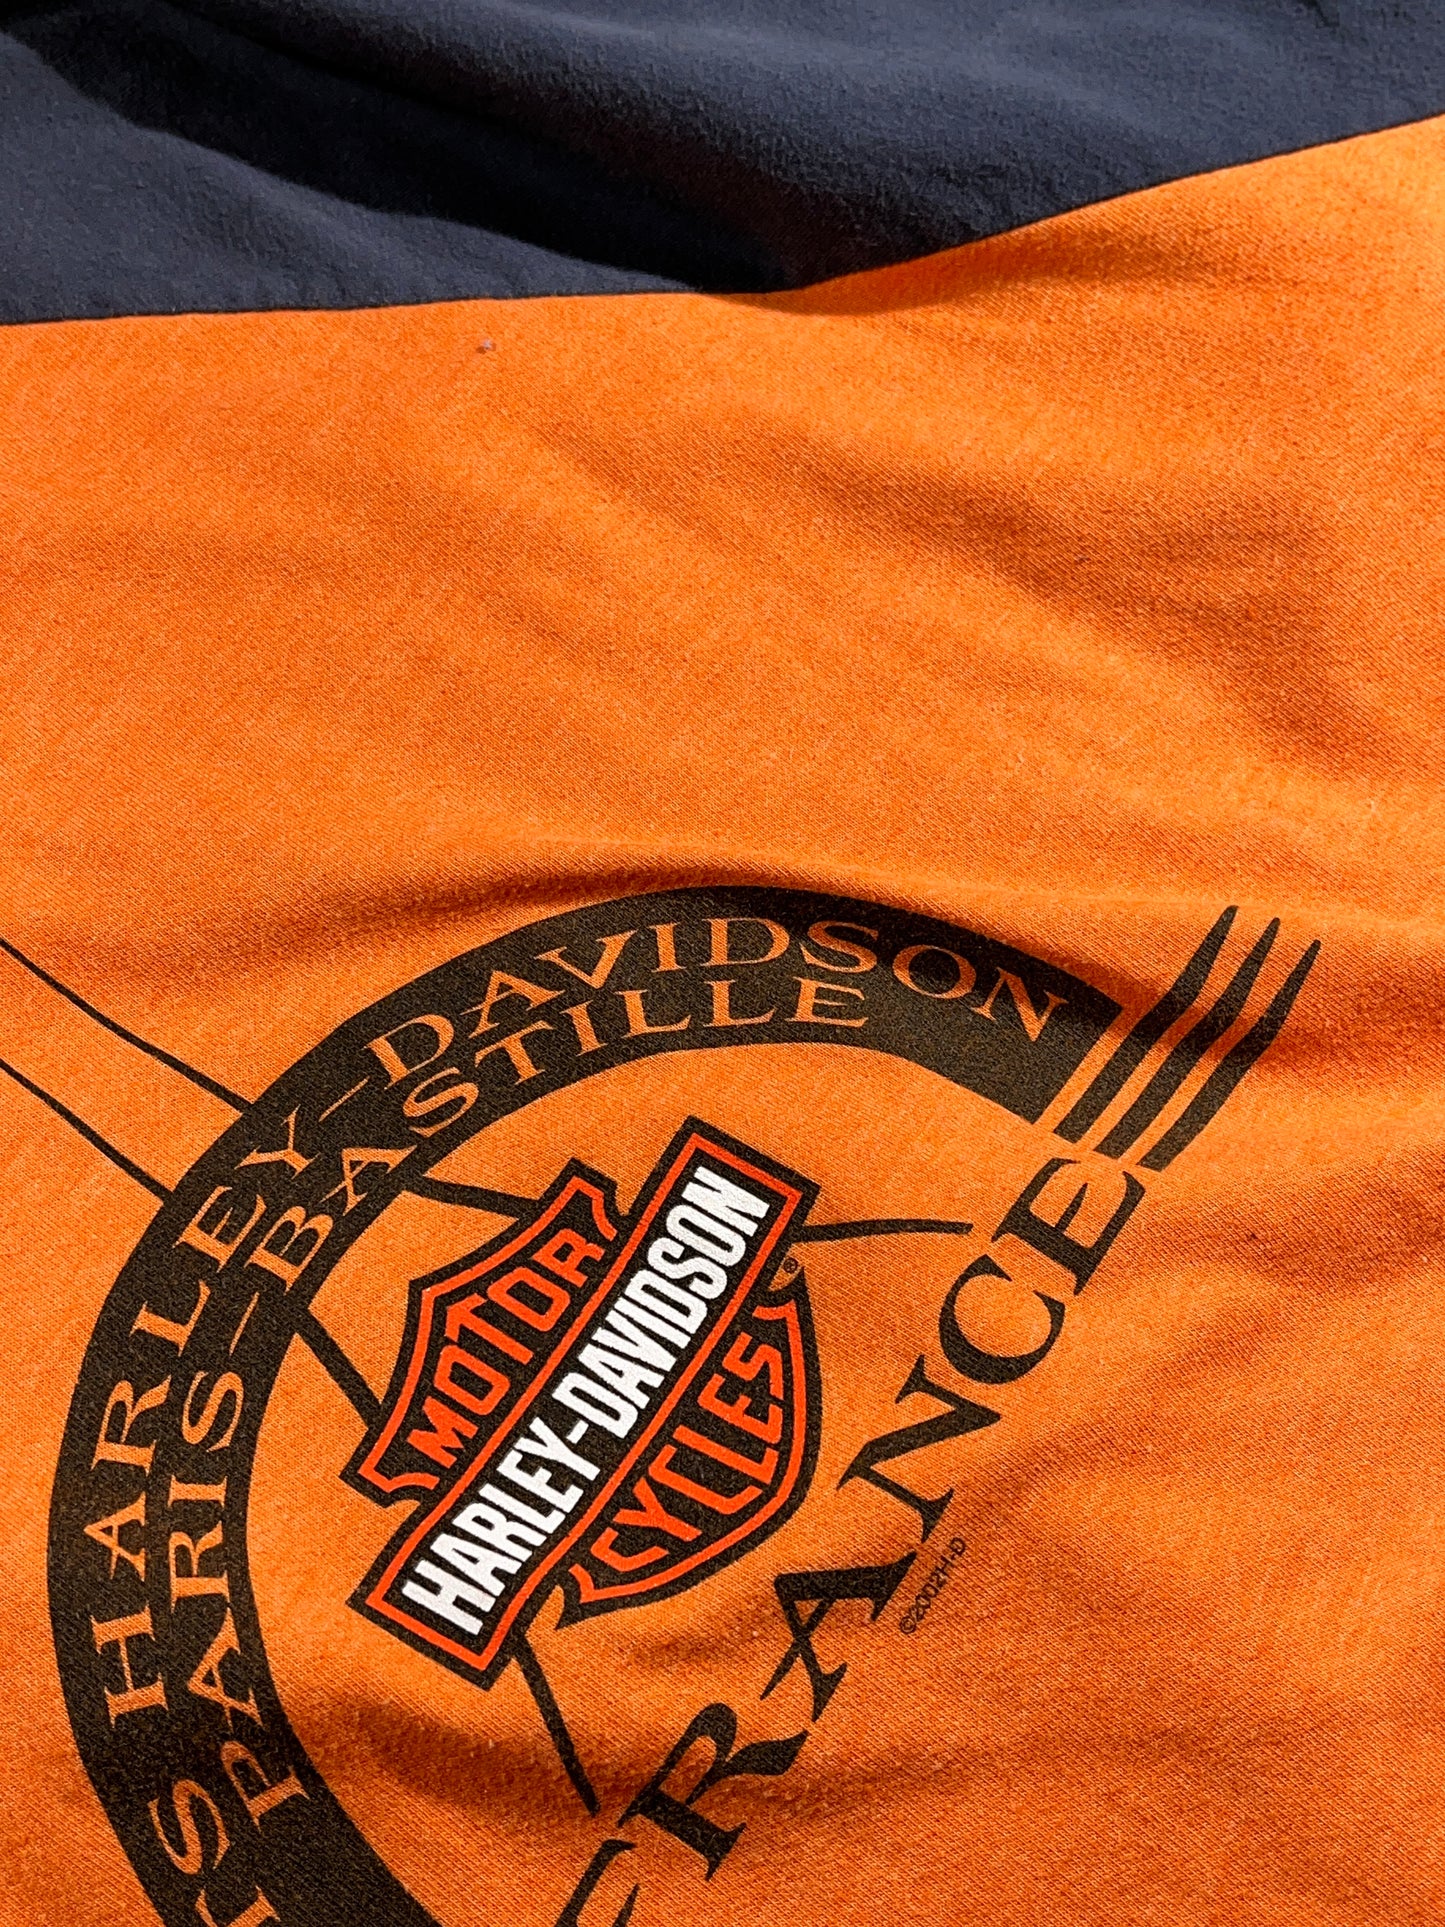 Vintage Harley Davidson T-Shirt Long Sleeve Top France